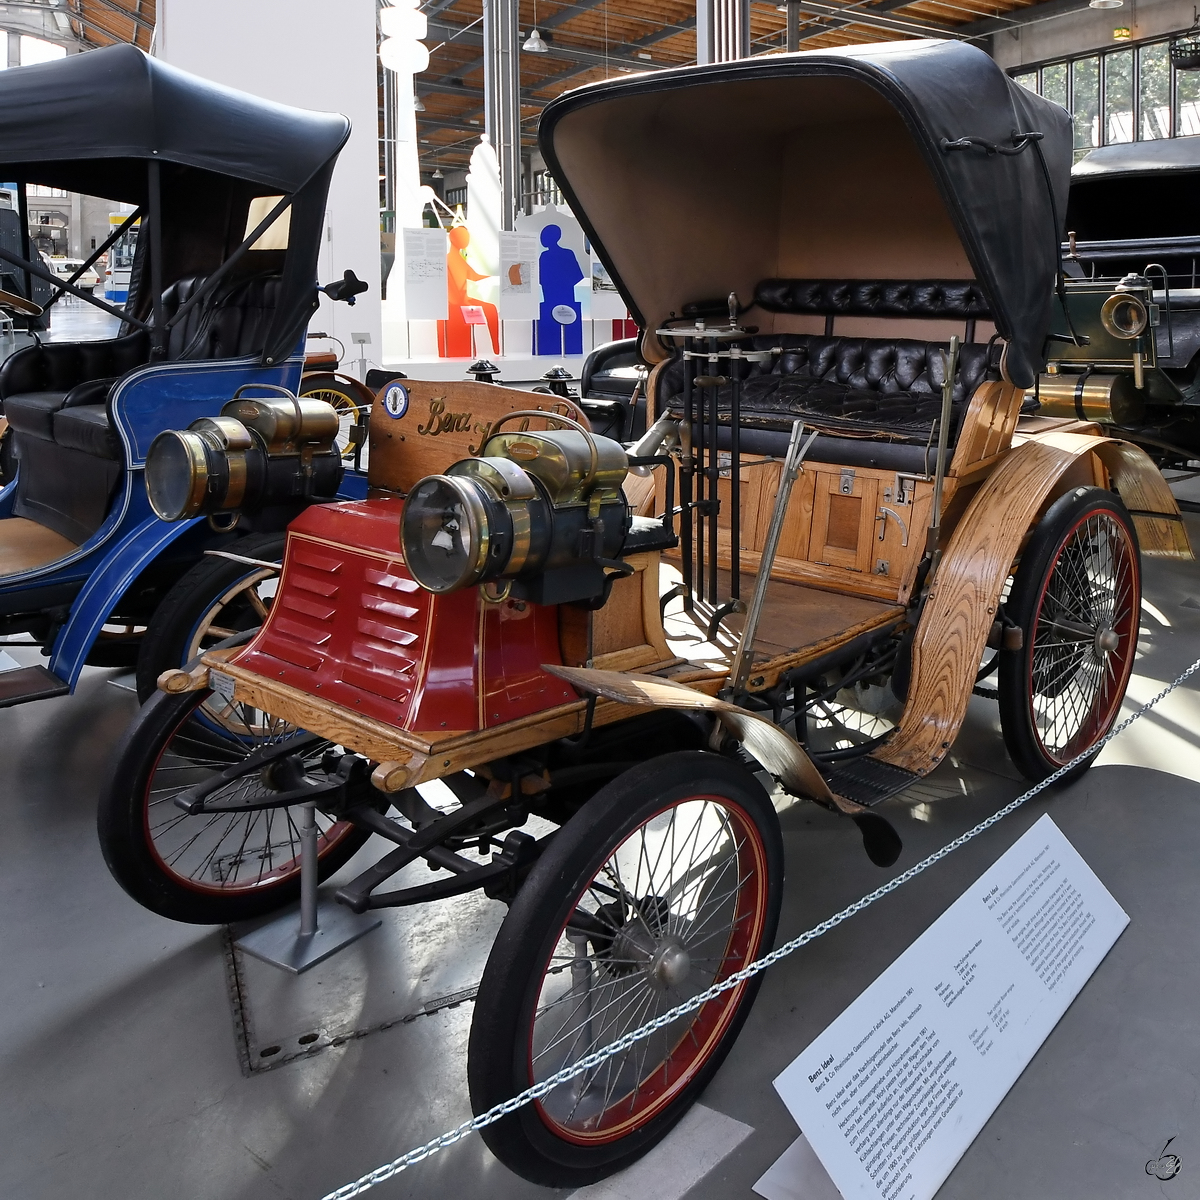 Ein Benz Ideal aus dem Jahr 1901 ist im Verkehrszentrum des Deutschen Museums in München ausgestellt. (August 2020)